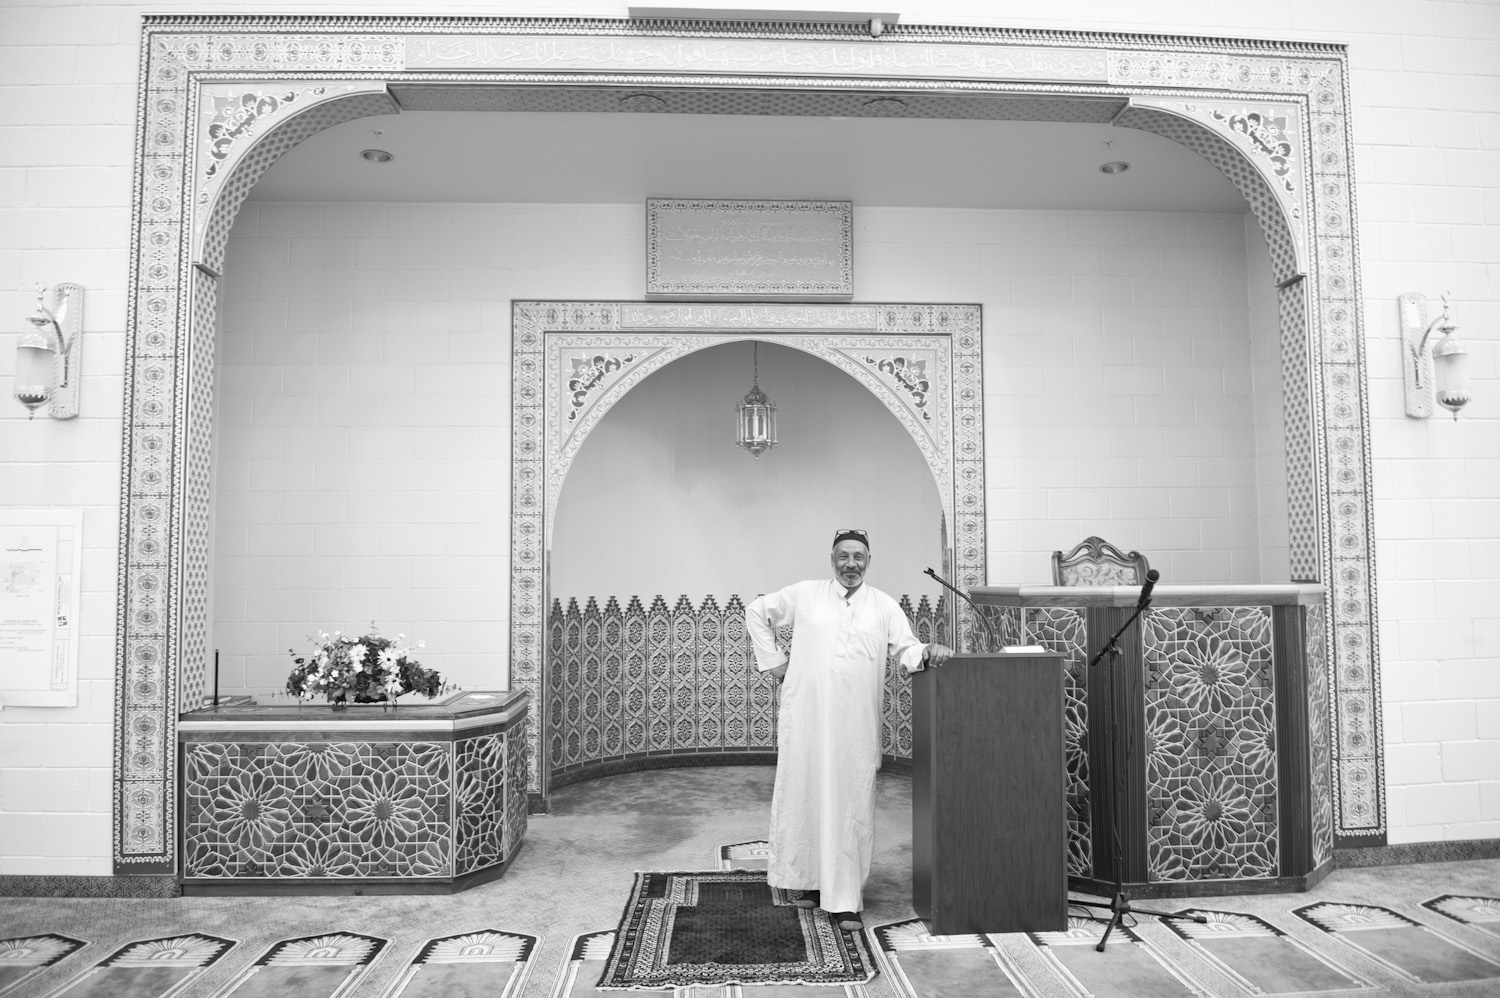  Mohammed Jbailat inside the Khadeeja Islamic Center, a Muslim place of worship. 